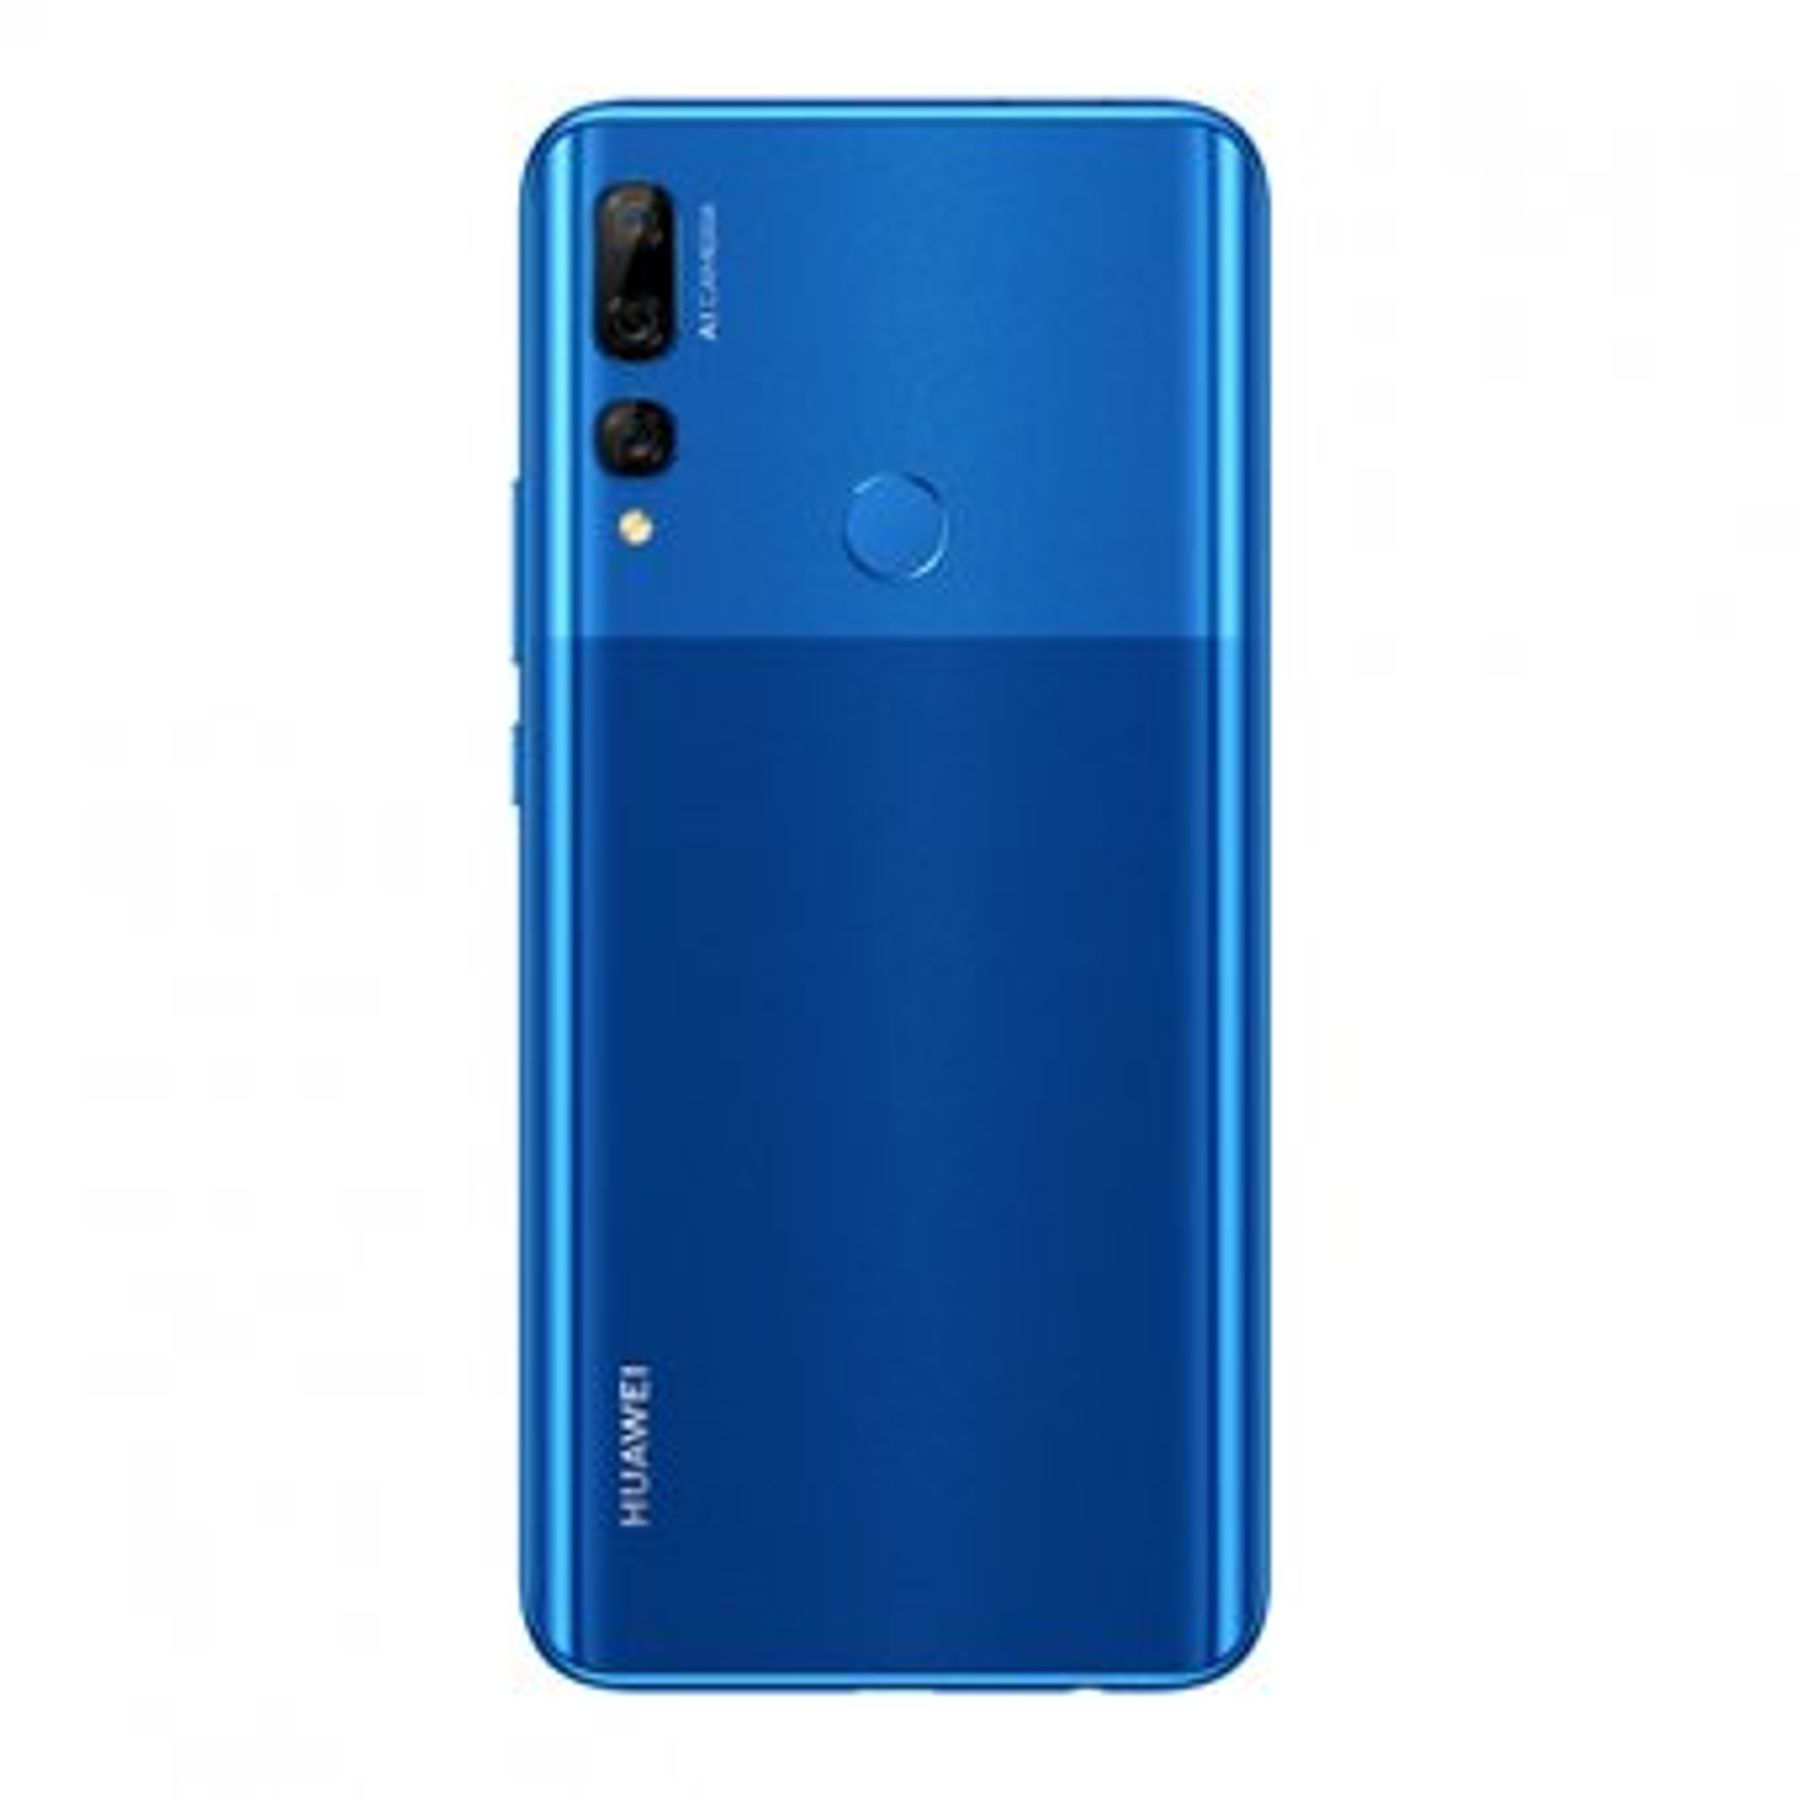 Huawei Y9 Prime 2019 Blue